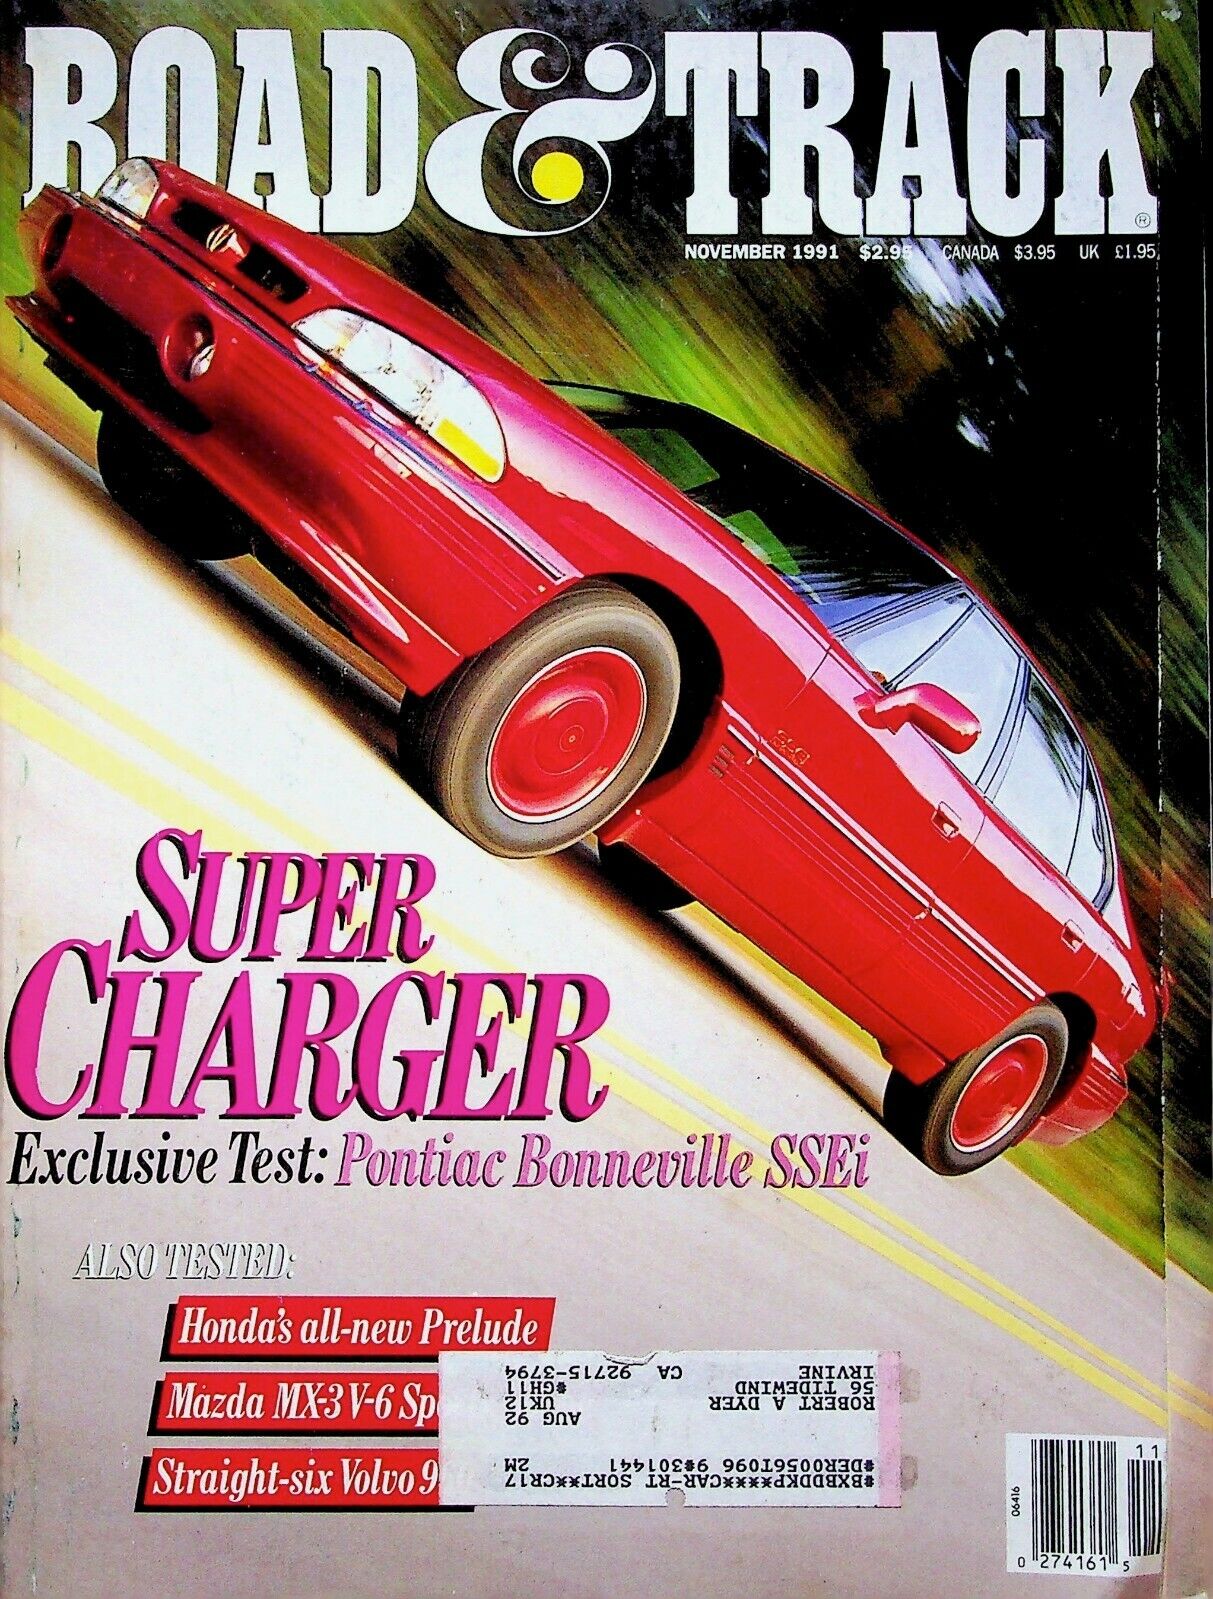 VINTAGE SUPER CHARGER - ROAD & TRACK MAGAZINE, VOLUME 43, NUMBER 3 NOV 1991